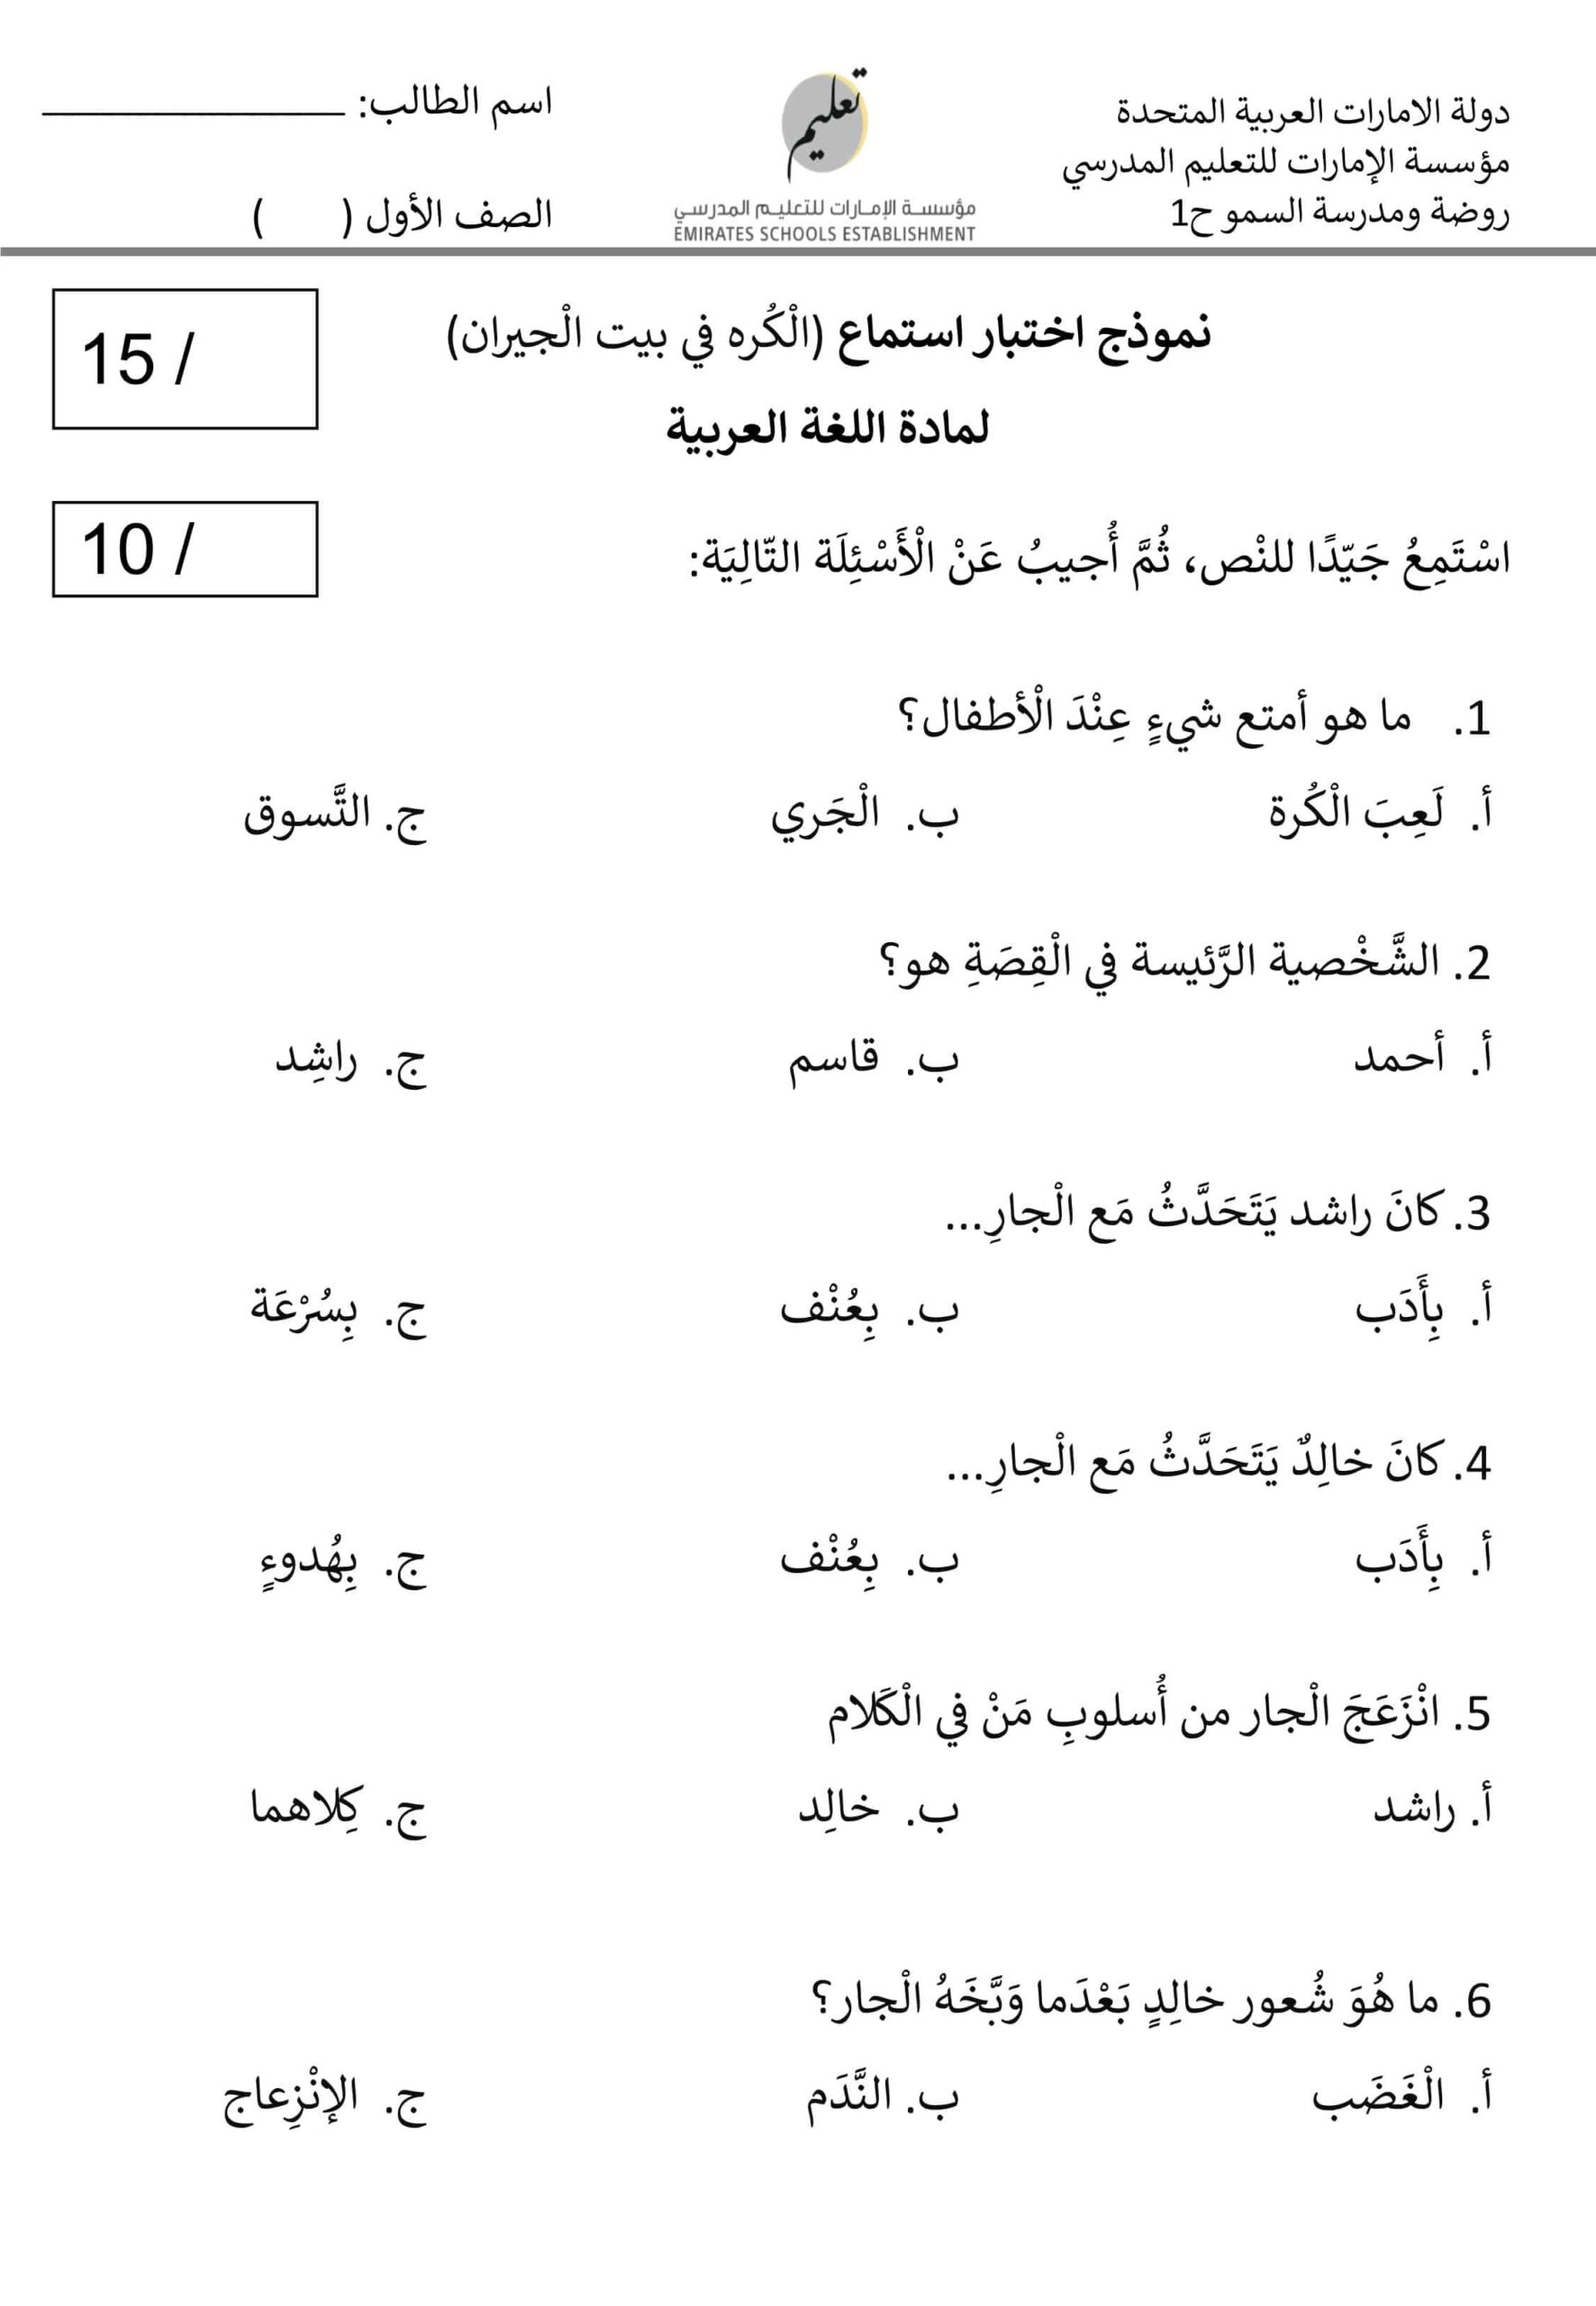 نموذج اختبار استماع الكرة في بيت الجيران اللغة العربية الصف الأول